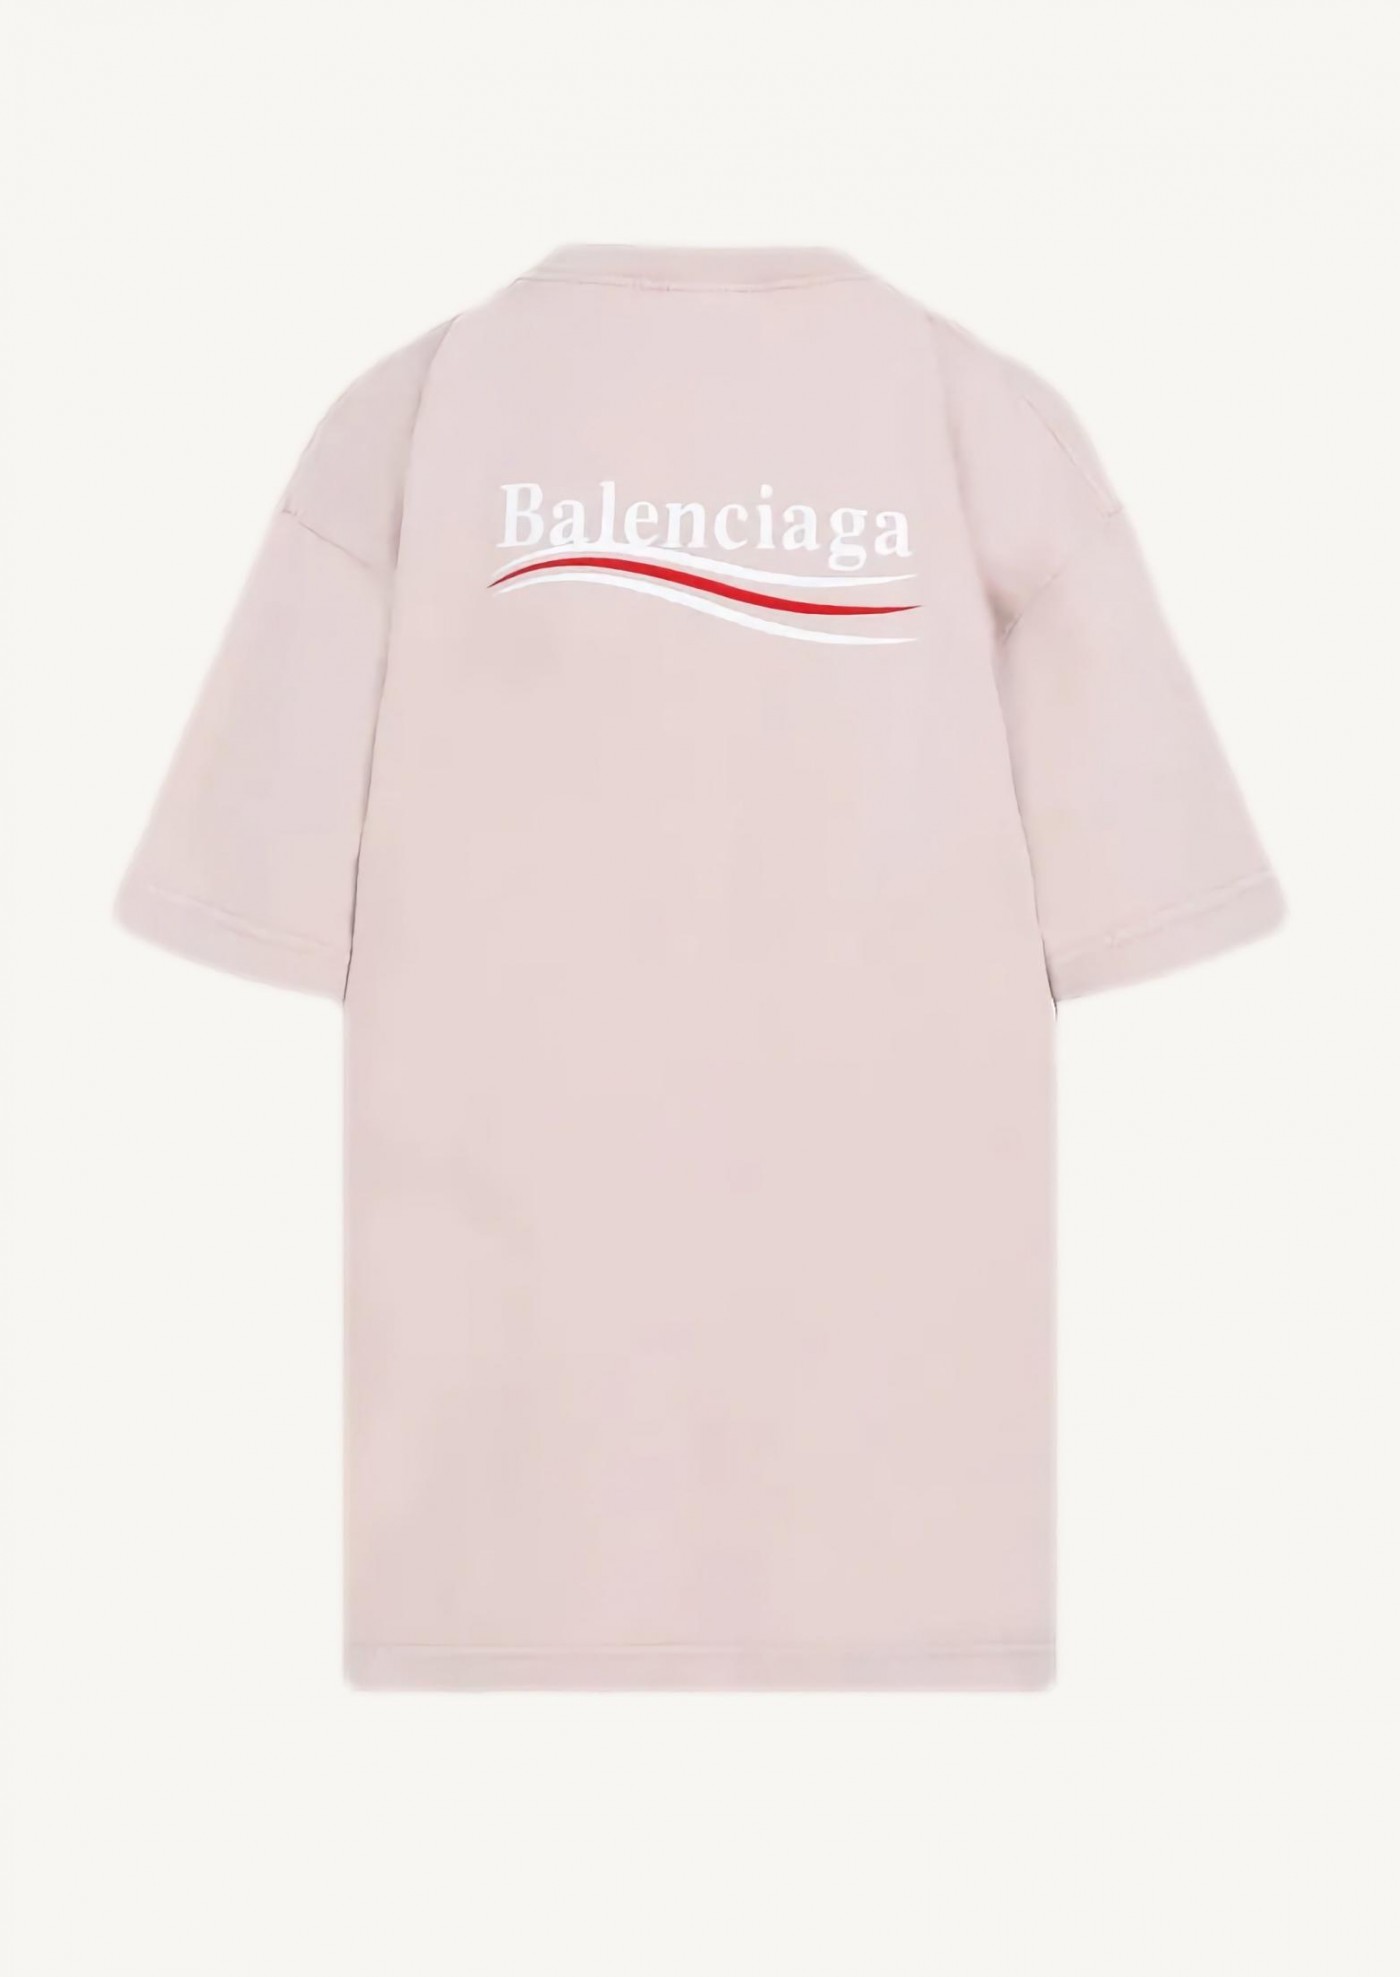 Balenciaga pink t-shirt